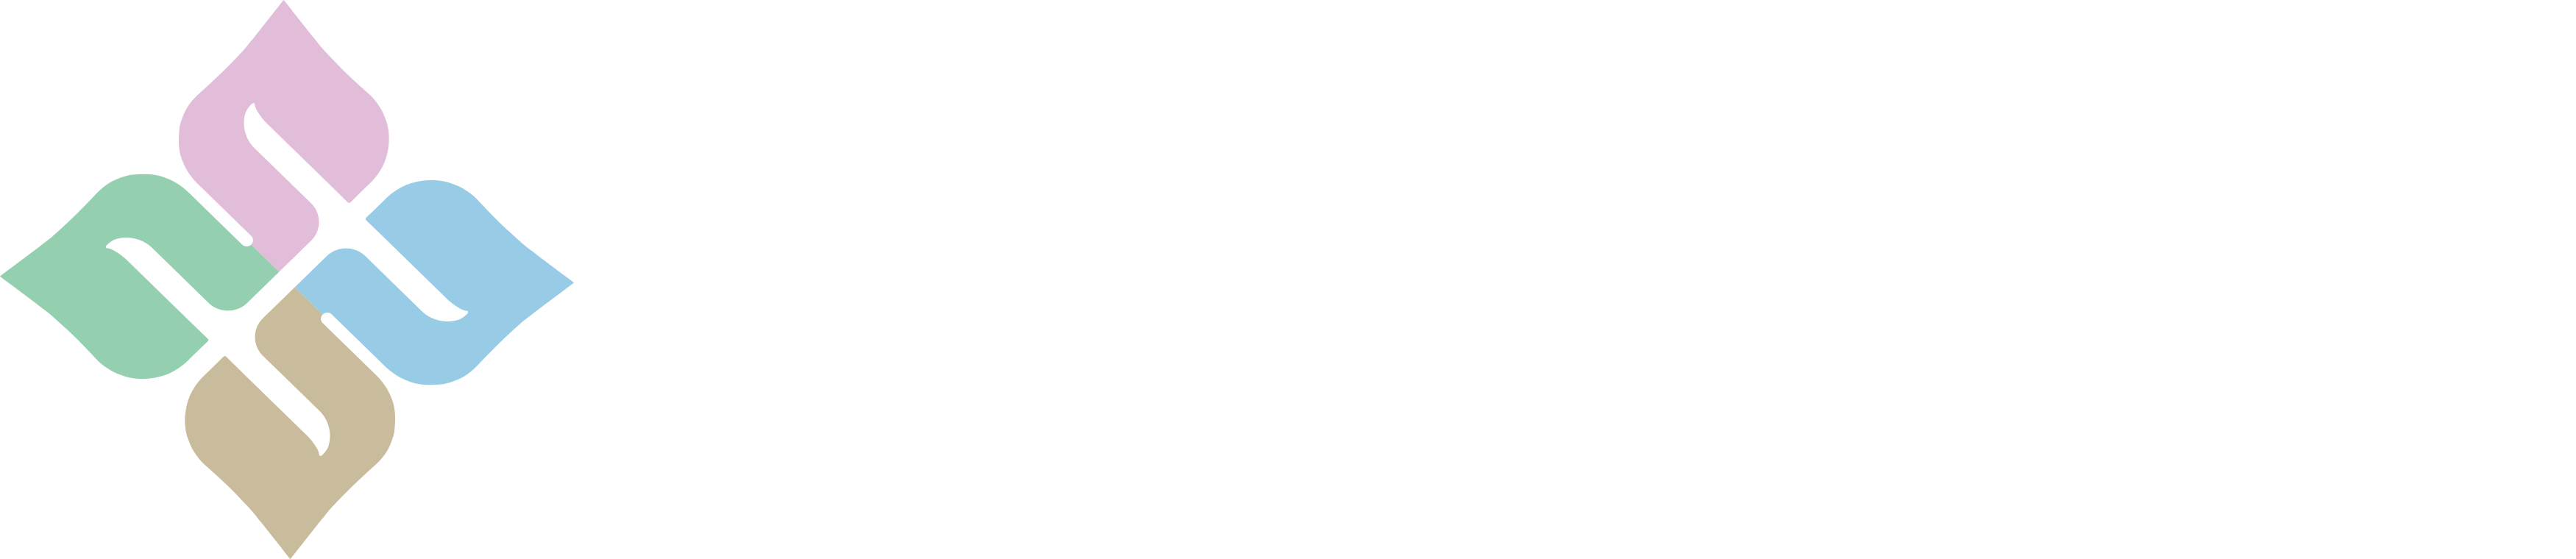 合作伙伴_合作品牌_广州市花木采研生物科技有限公司